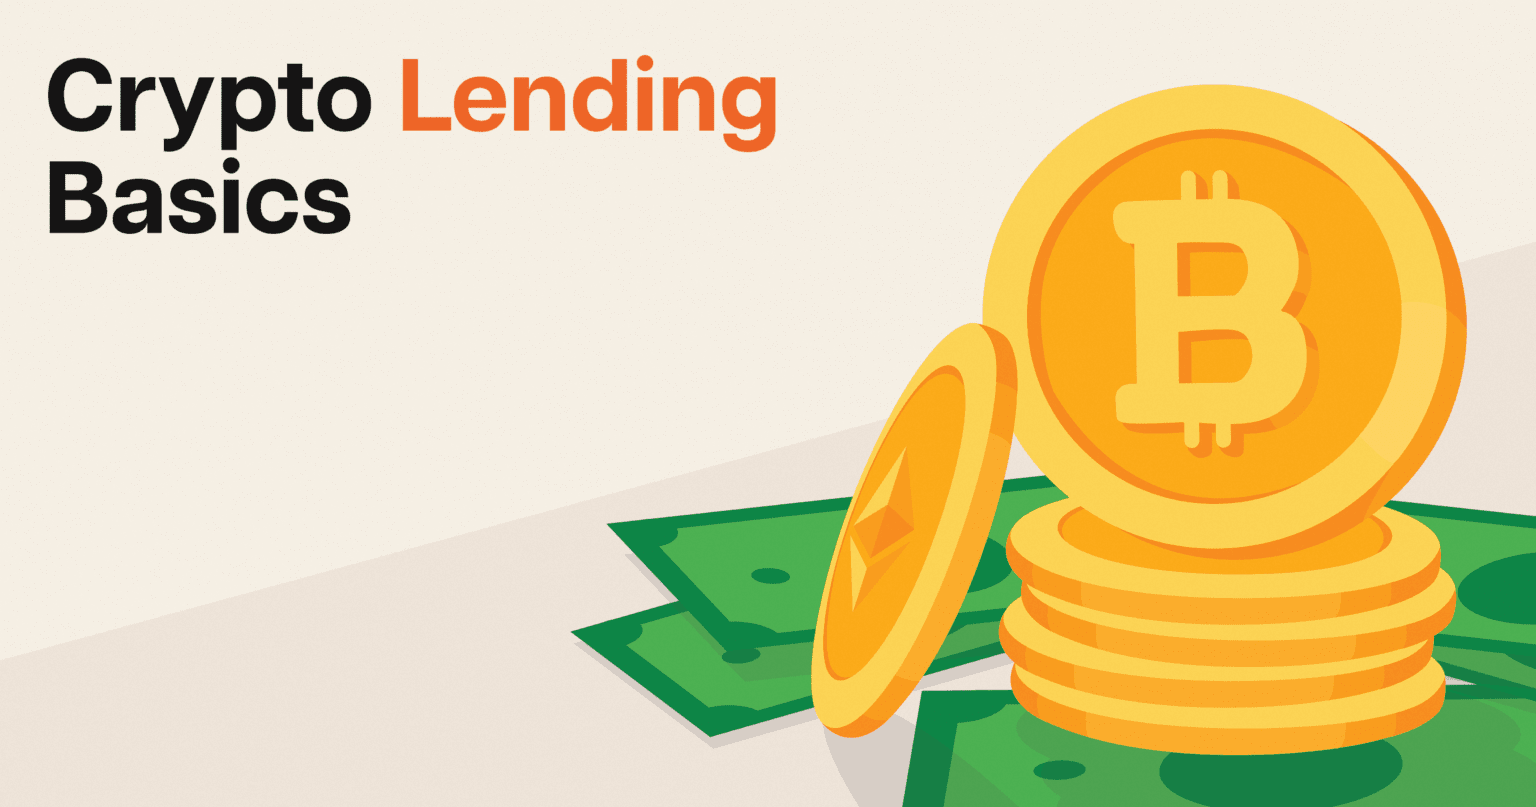 Crypto Lending Basics by Nebeus